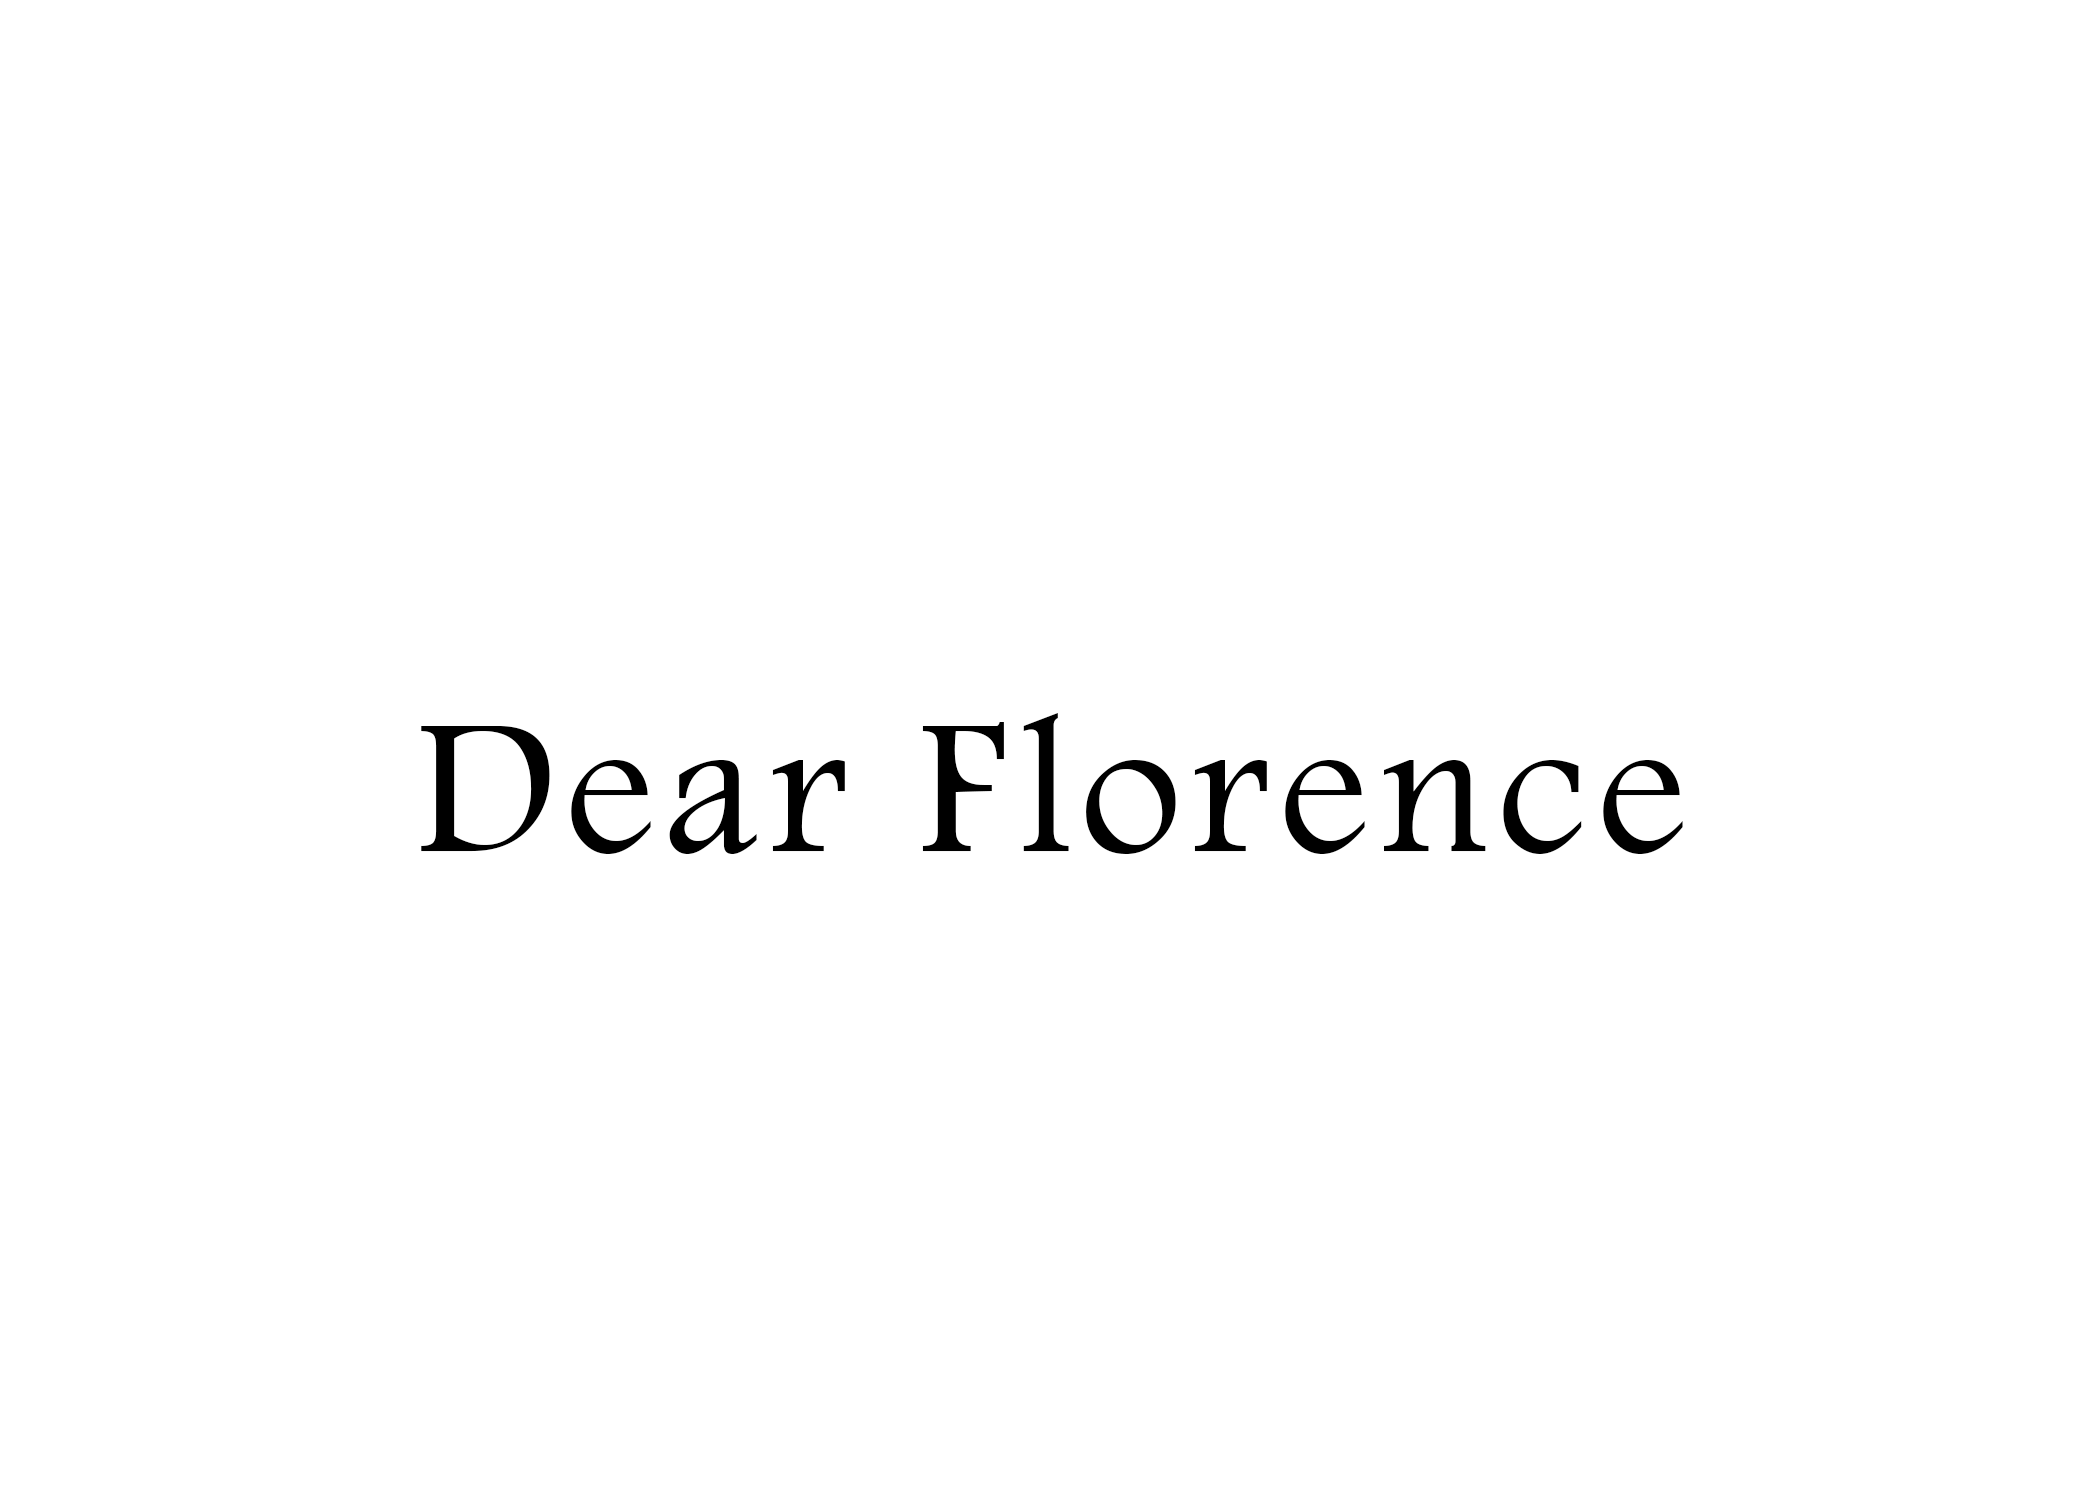 Dear Florence